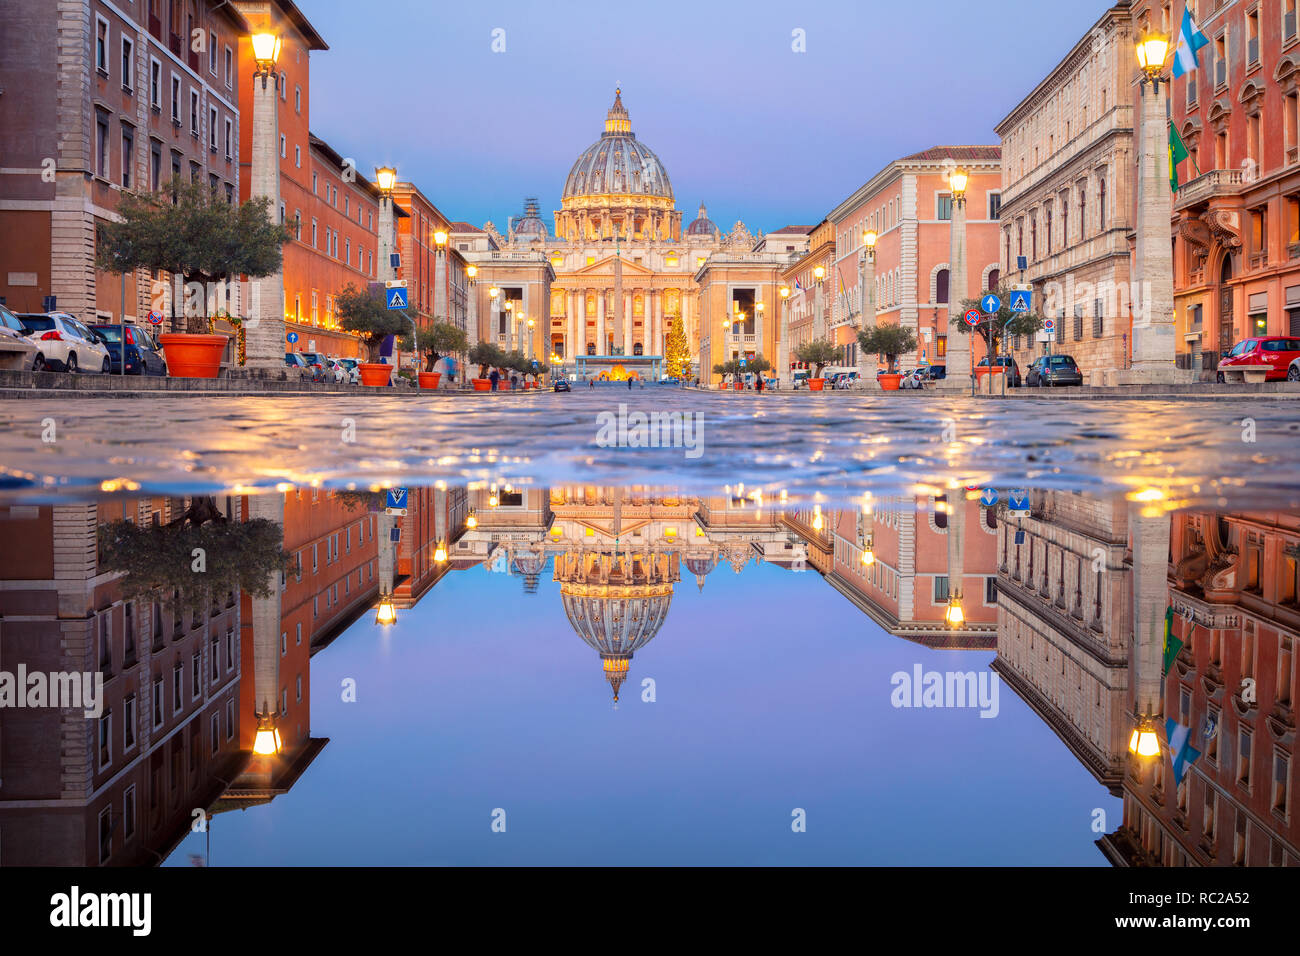 Rom, Vatikanstadt. Stadtbild Bild von beleuchteten Petersdom und Straße Via della Conciliazione, Vatikan, Rom, Italien. Stockfoto